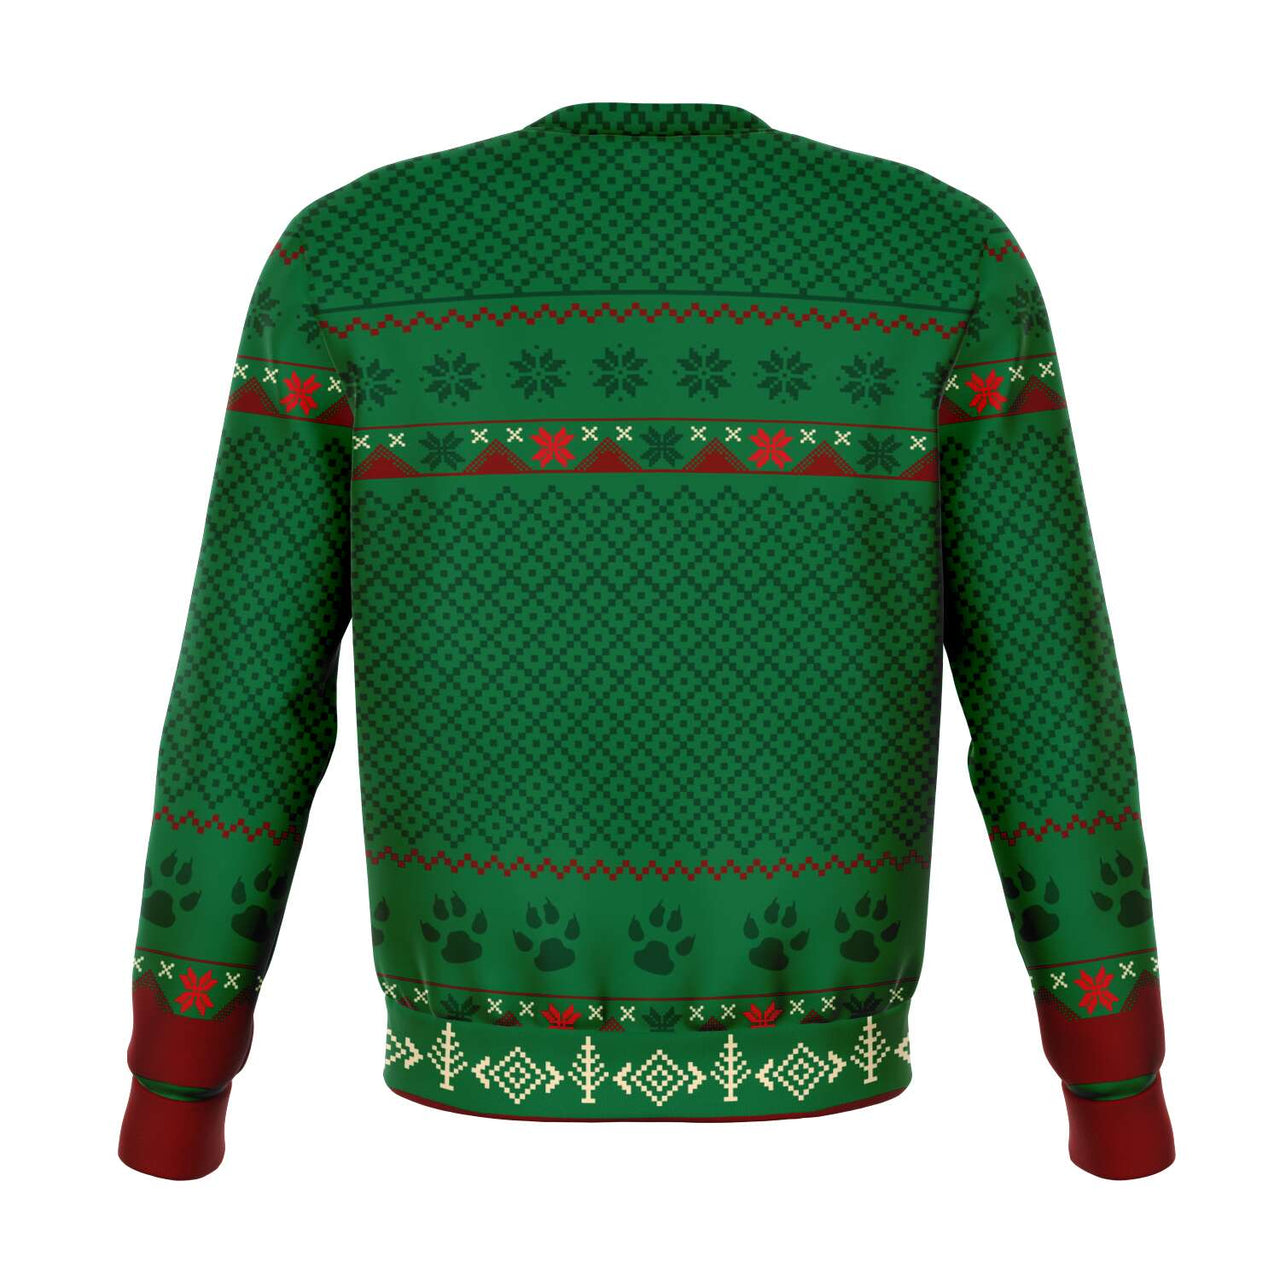 Feliz Navidog-Labrador-Ugly Christmas Shirt